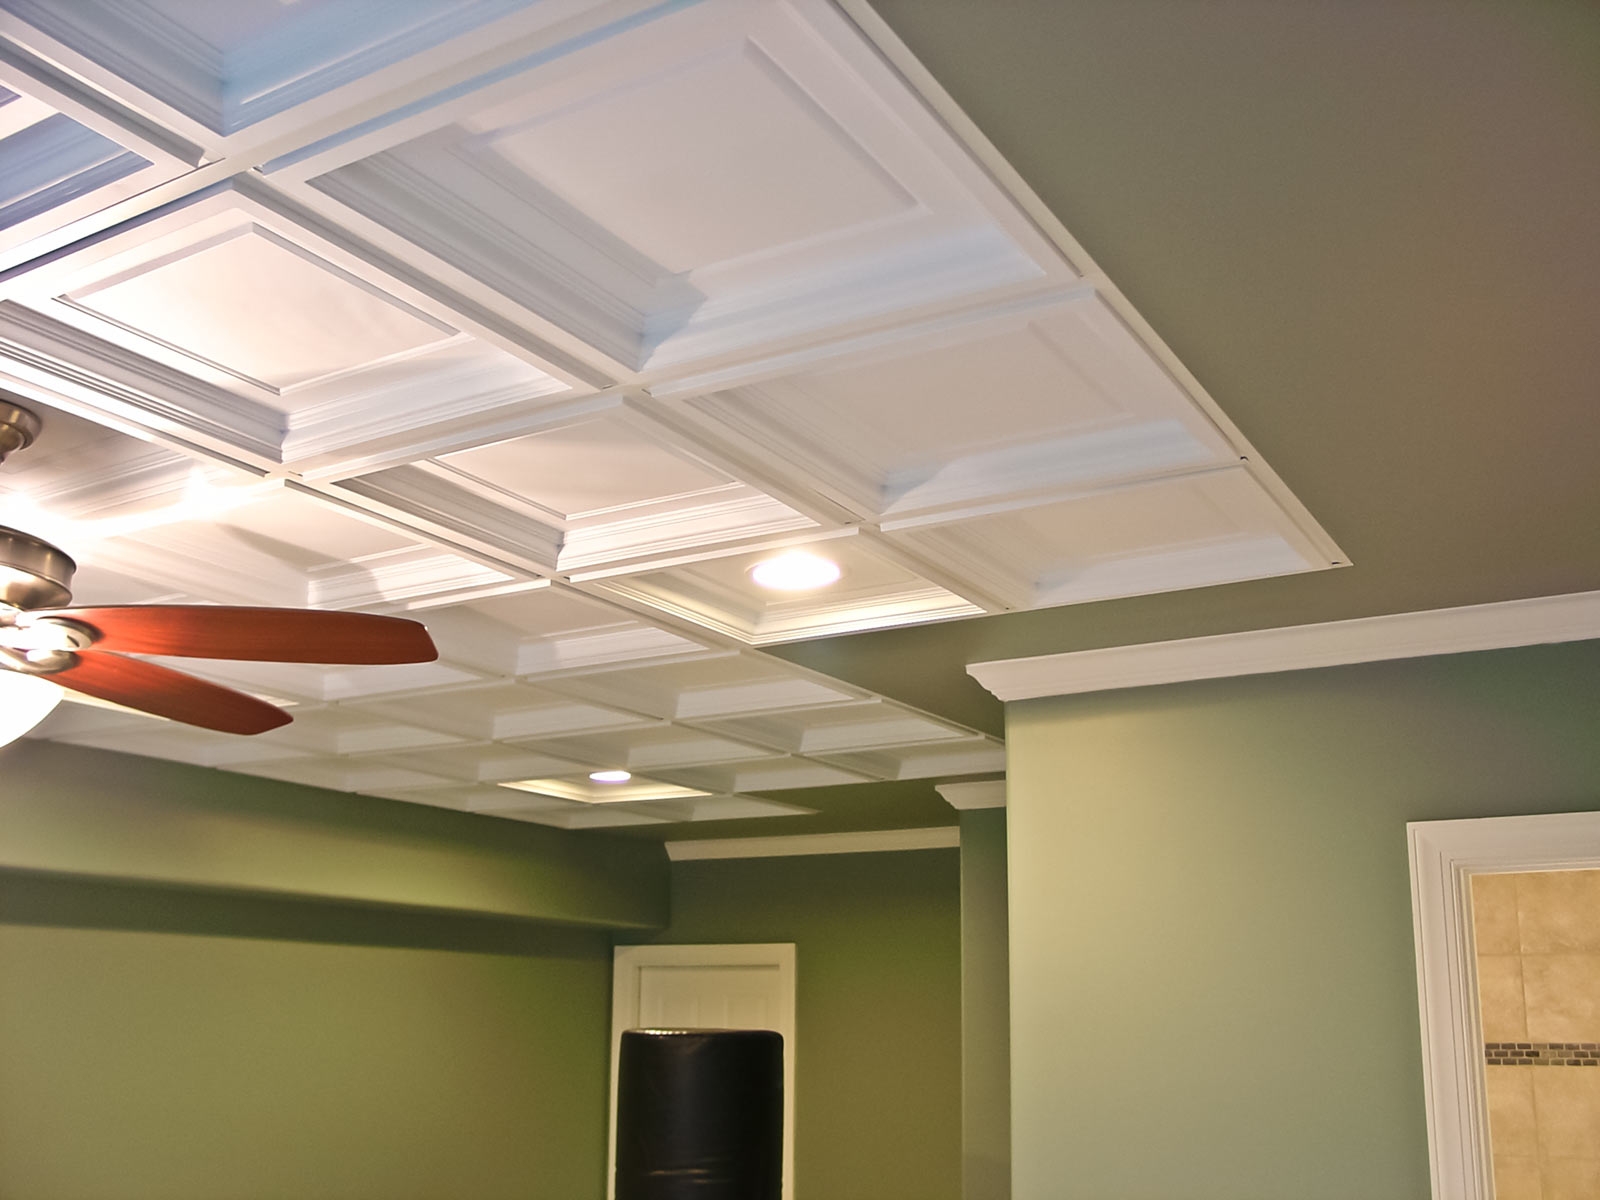 Decorative Ceiling Tiles 2×4drop ceiling tiles 2x4 ideas creative home decoration